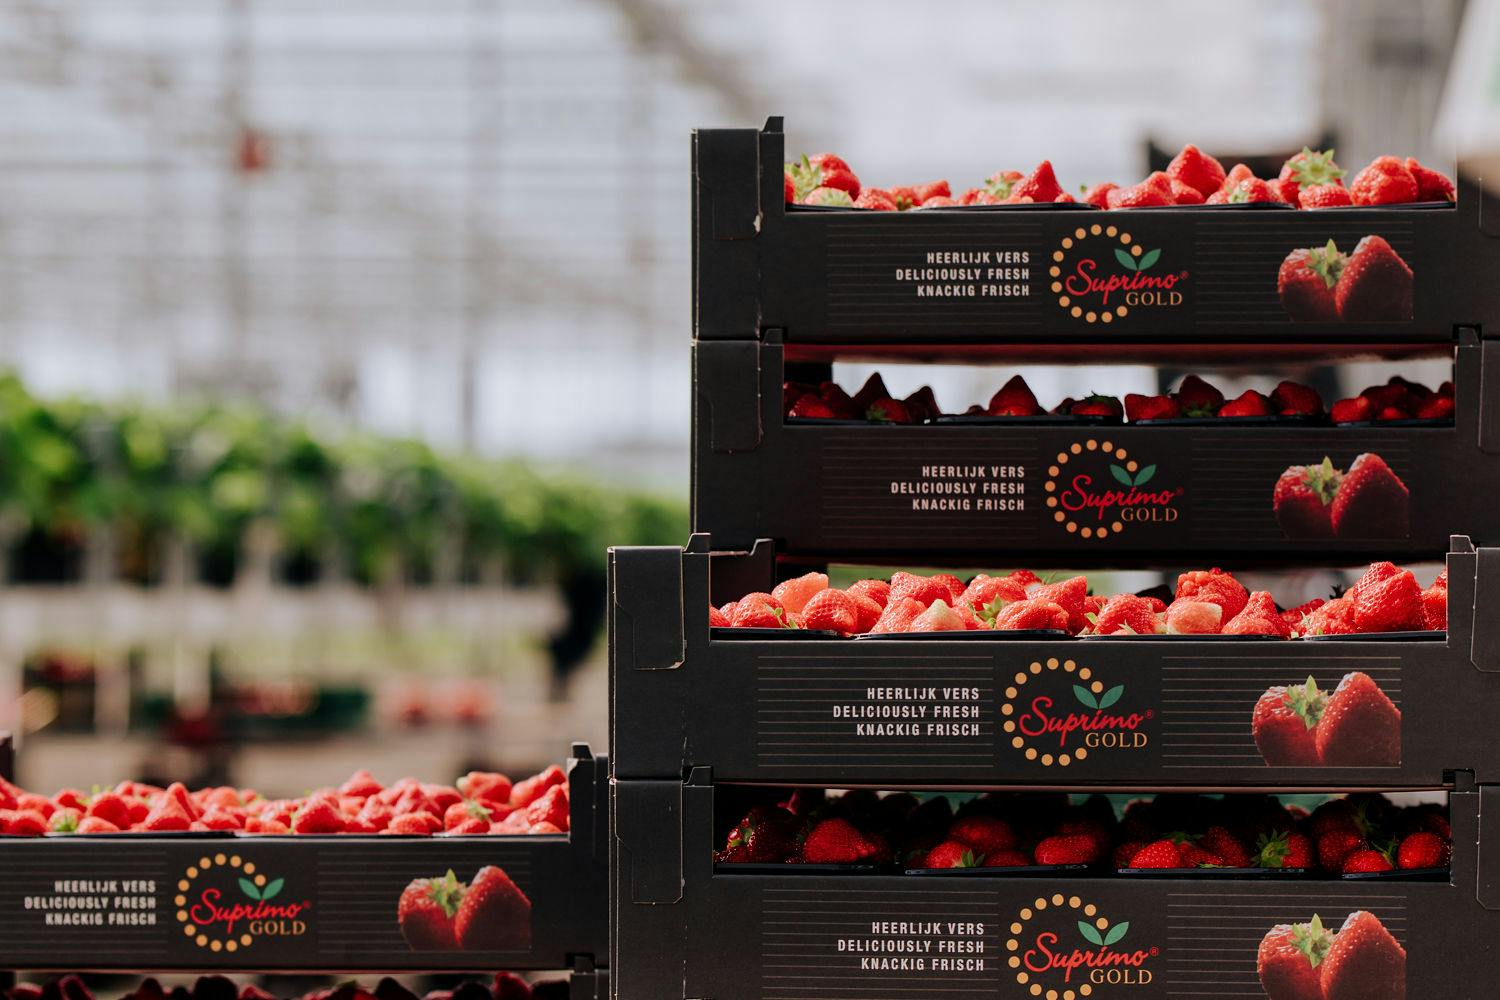 Kwalitatieve aardbeien uit regio Gelderland